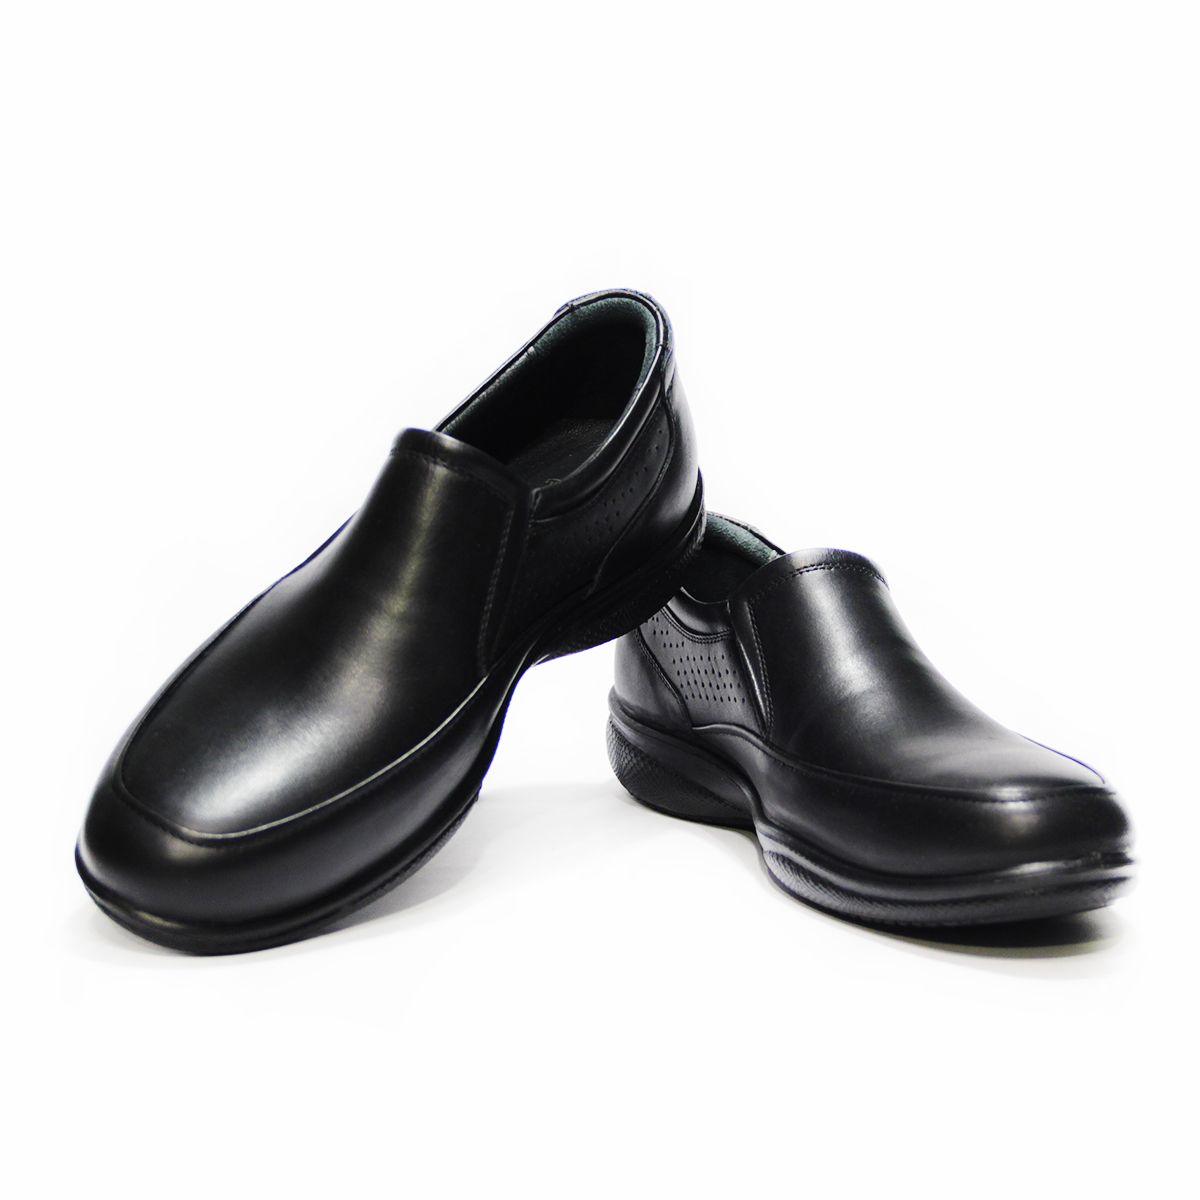 کفش روزمره مردانه فرزین کد TKM 0020 رنگ مشکی -  - 2